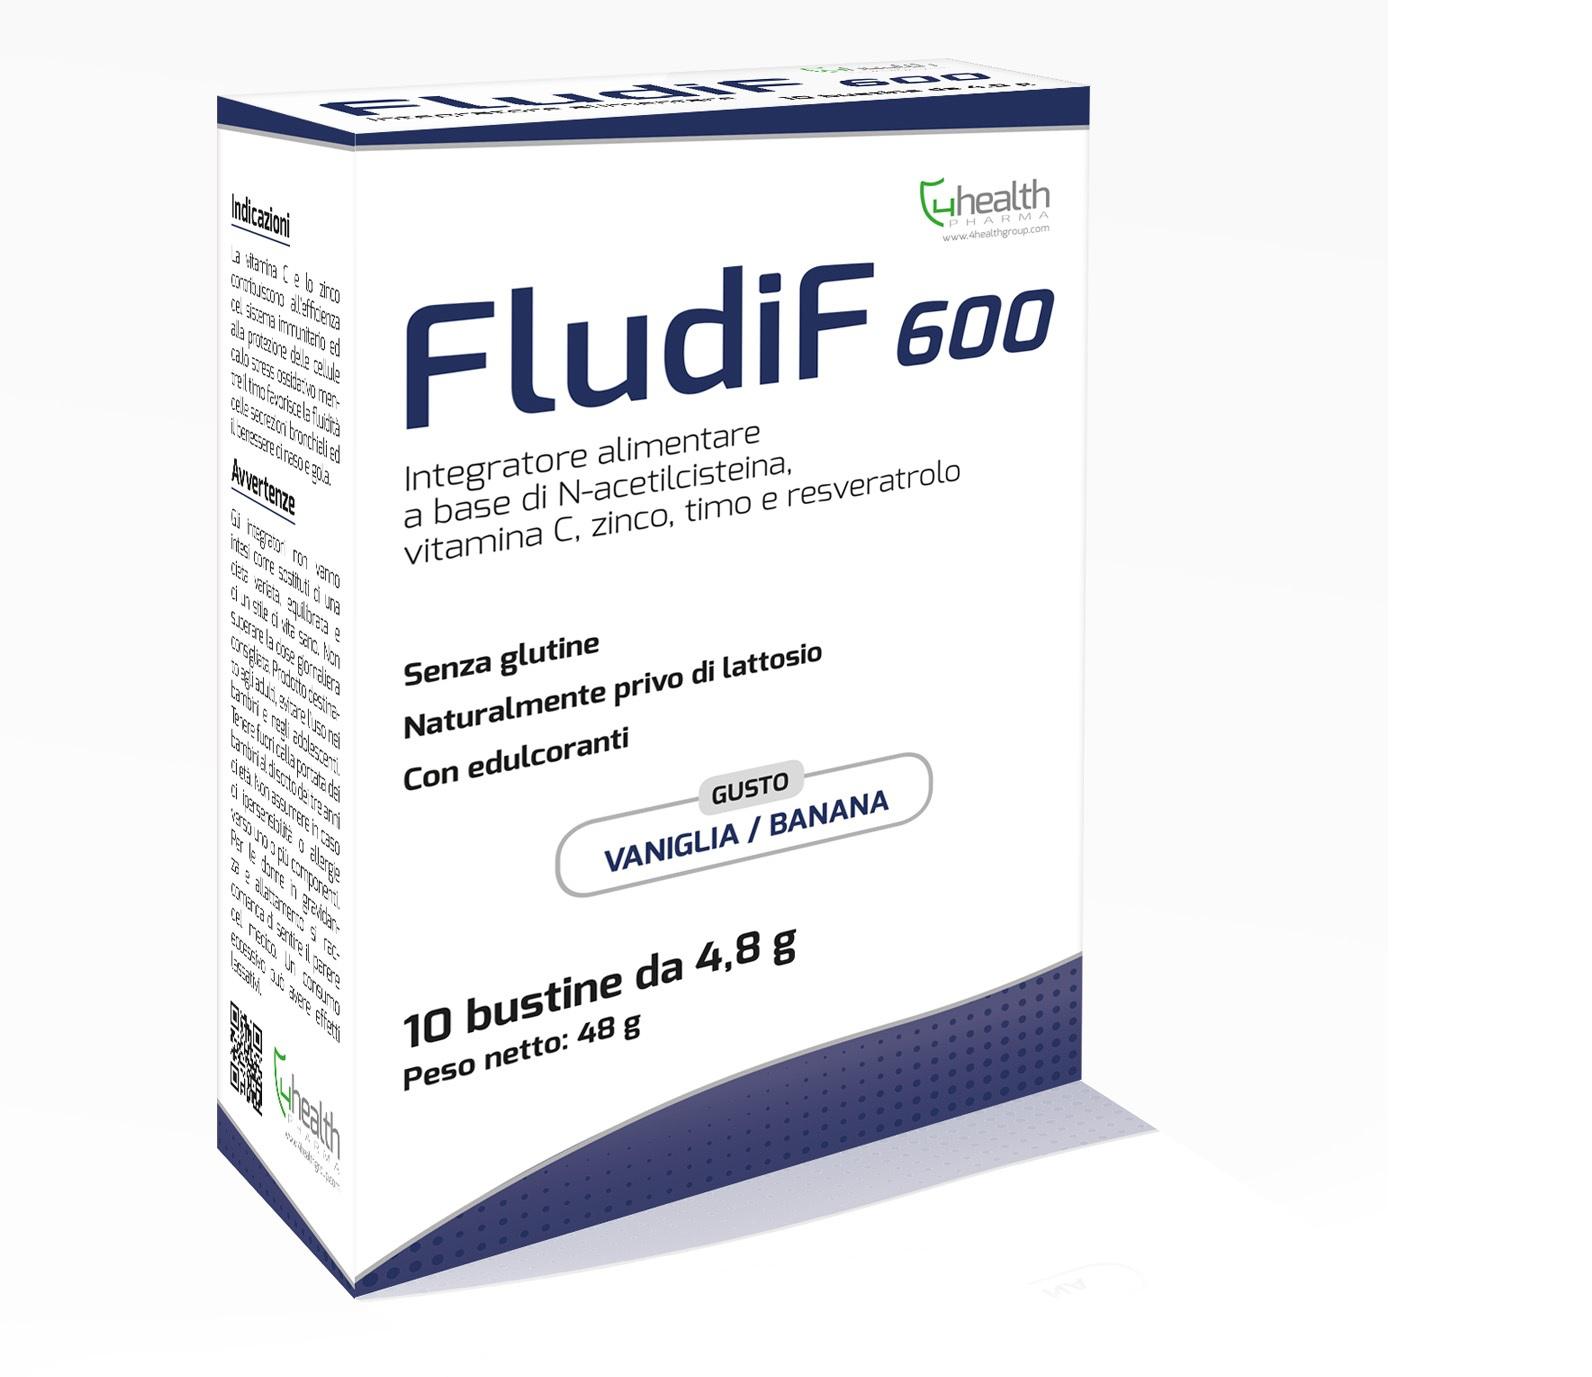 Fludif 600